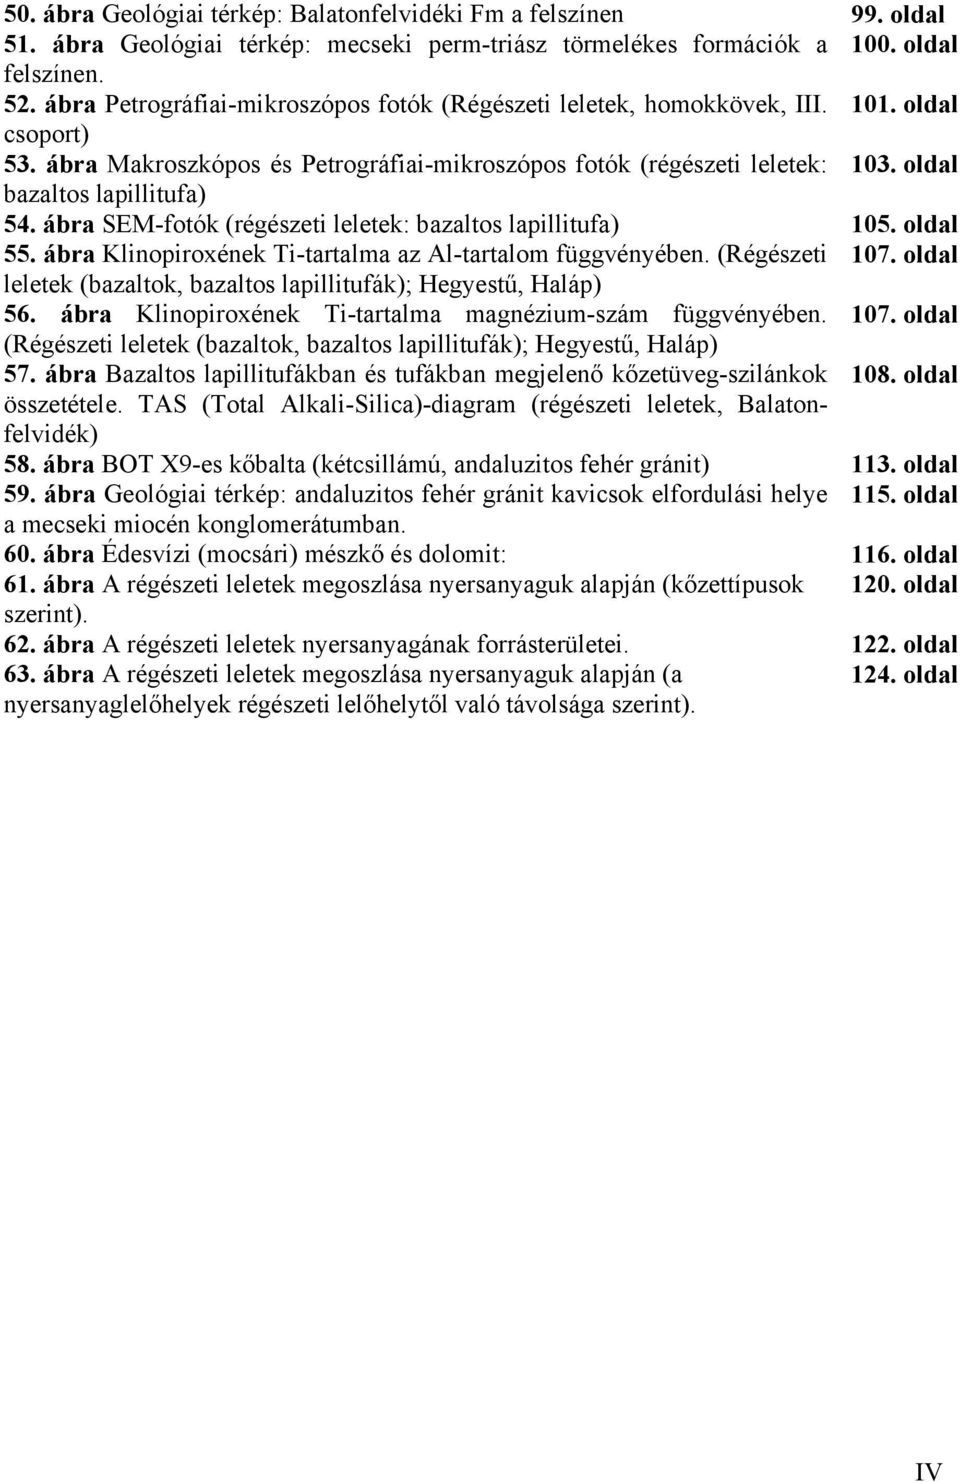 oldal bazaltos lapillitufa) 54. ábra SEM-fotók (régészeti leletek: bazaltos lapillitufa) 105. oldal 55. ábra Klinopiroxének Ti-tartalma az Al-tartalom függvényében. (Régészeti 107.